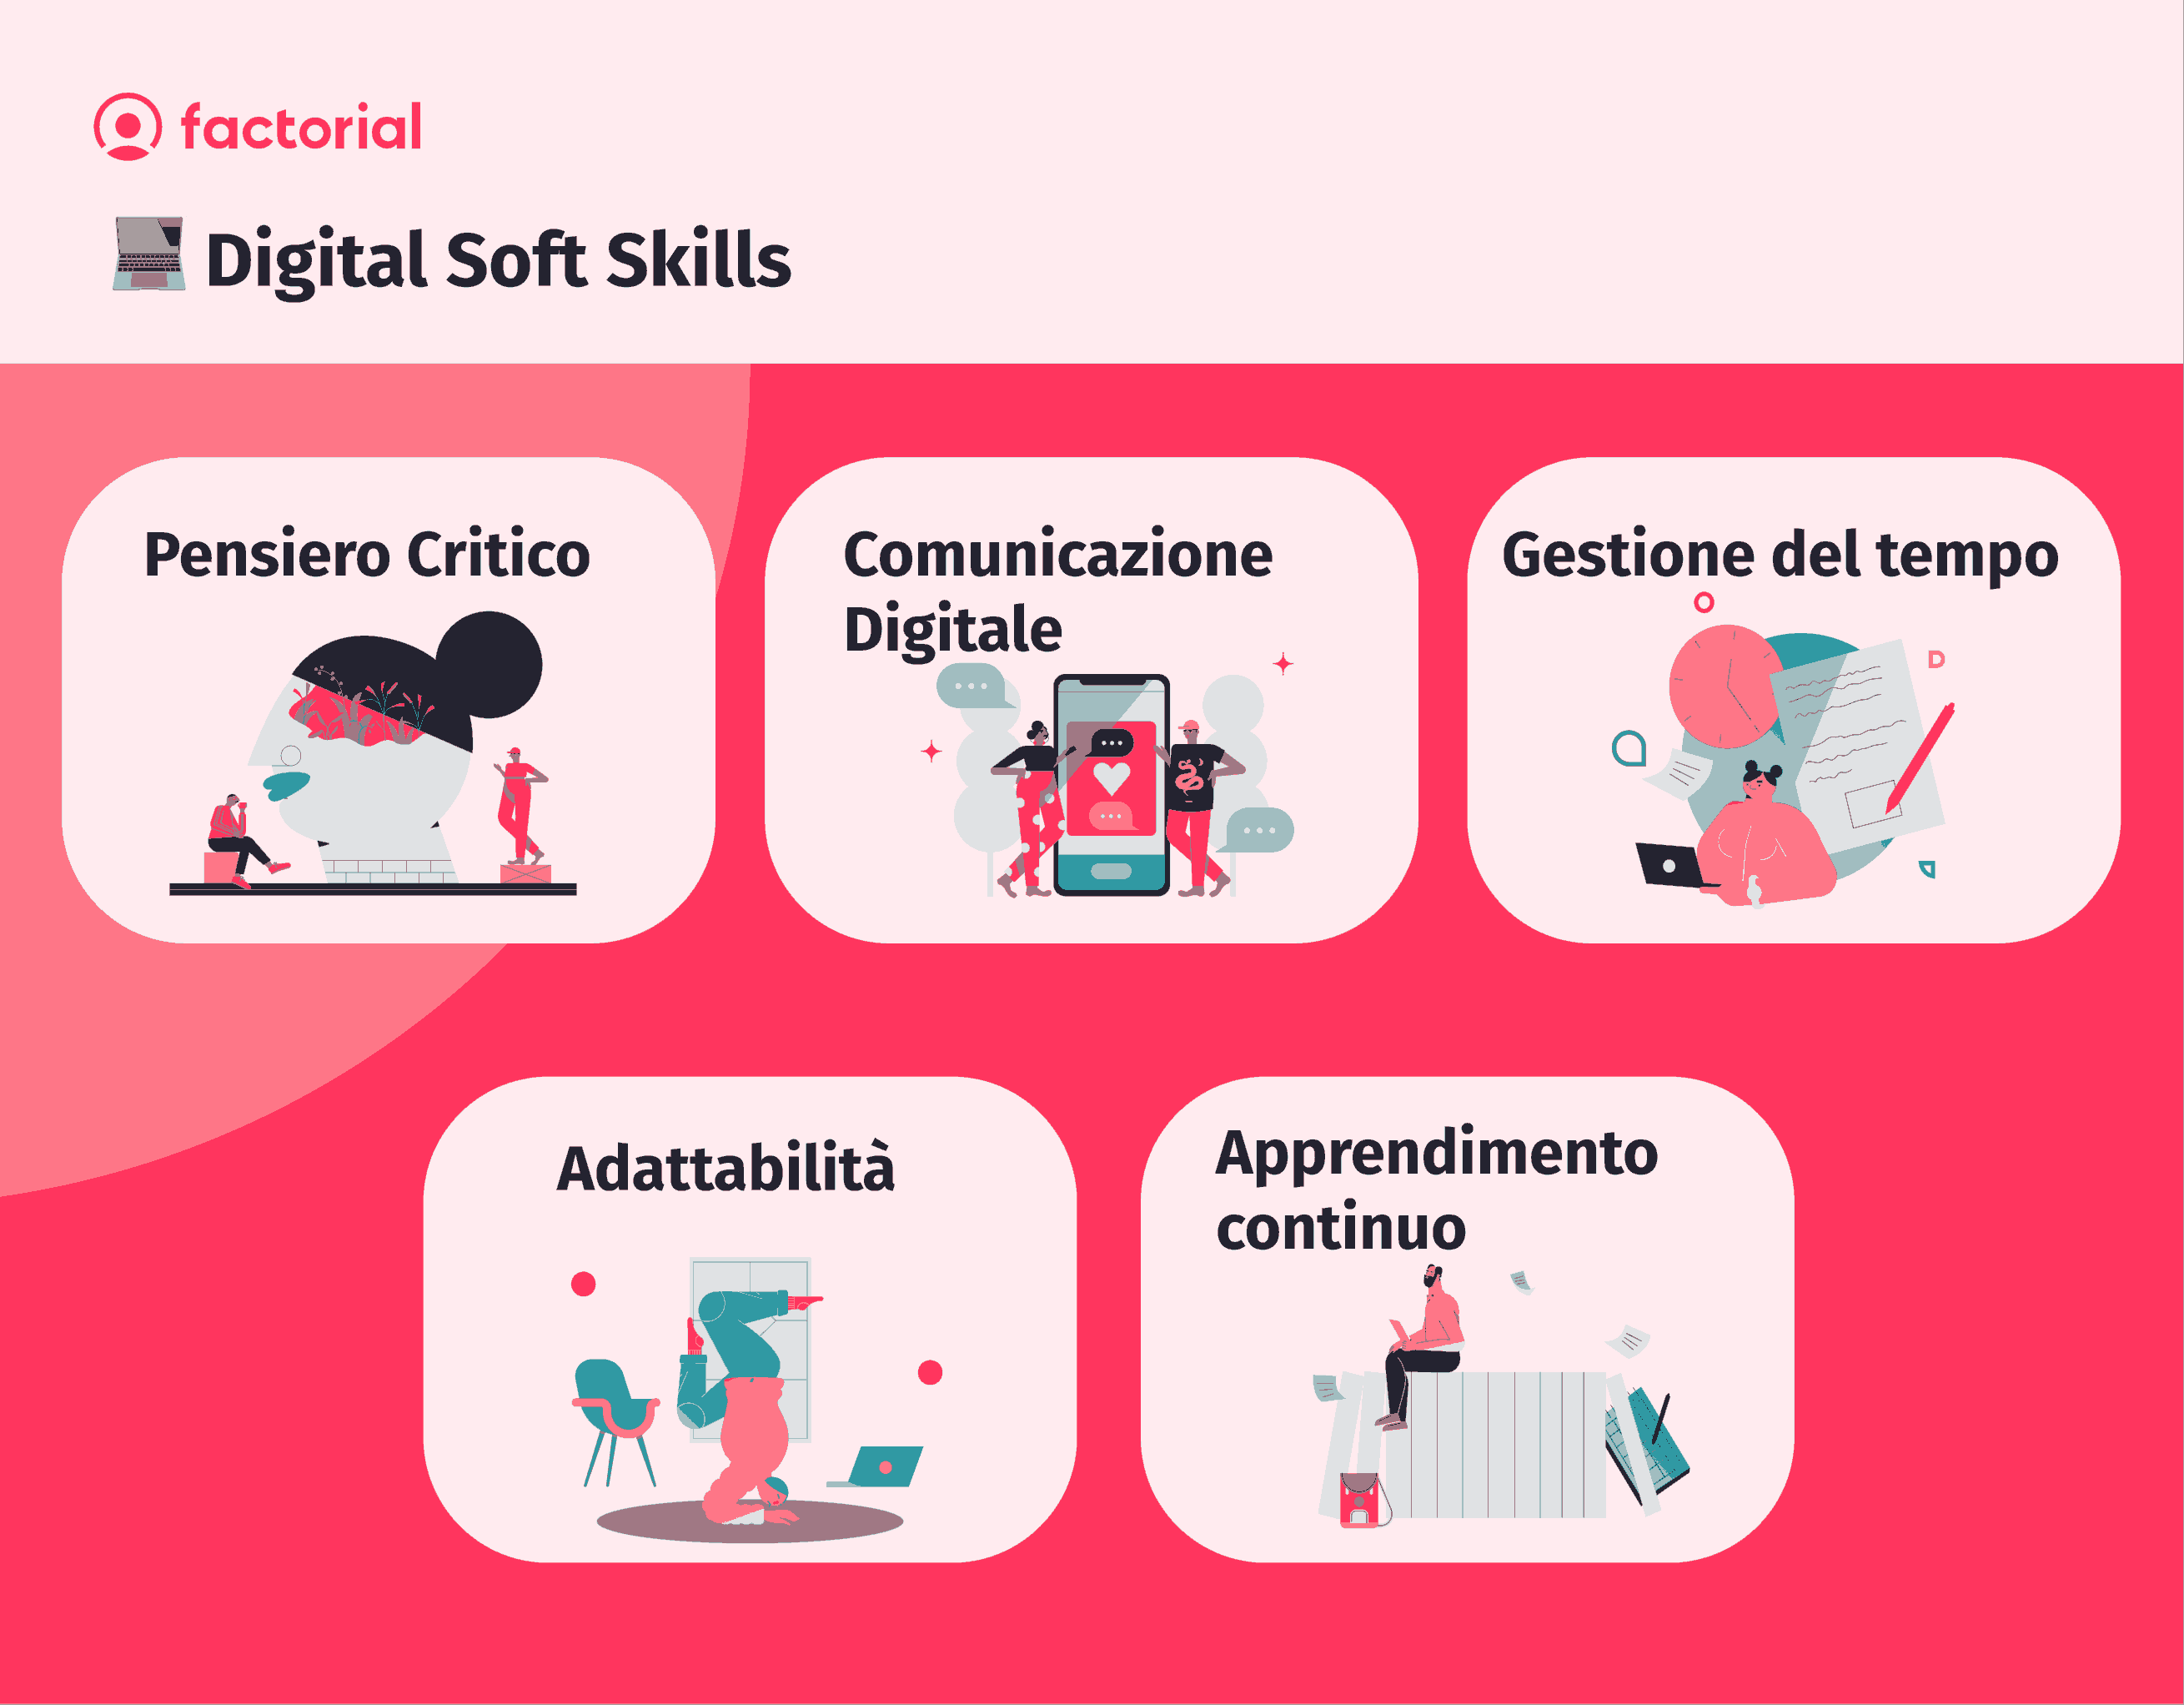 Le principali digital soft skills sono il pensiero critico, la comunicazione digitale, la gestione del tempo, l’adattabilità e l'apprendimento continuo